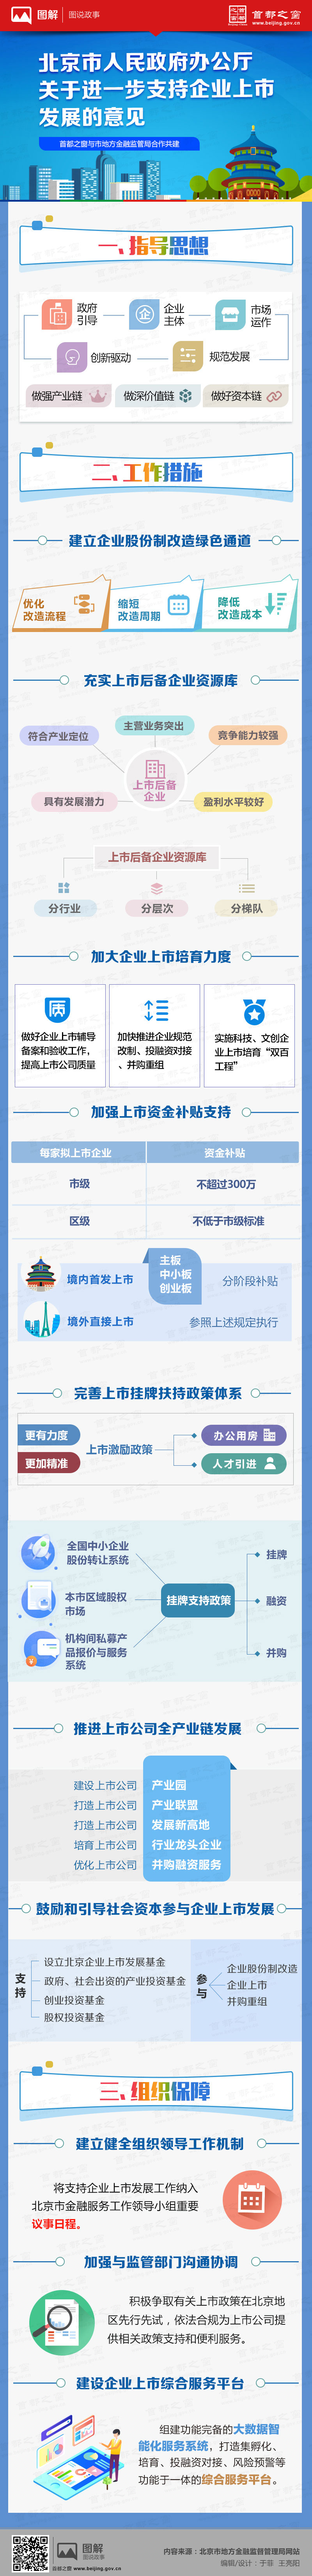 北京市人民政府办公厅关于进一步支持企业上市发展的意见.jpg